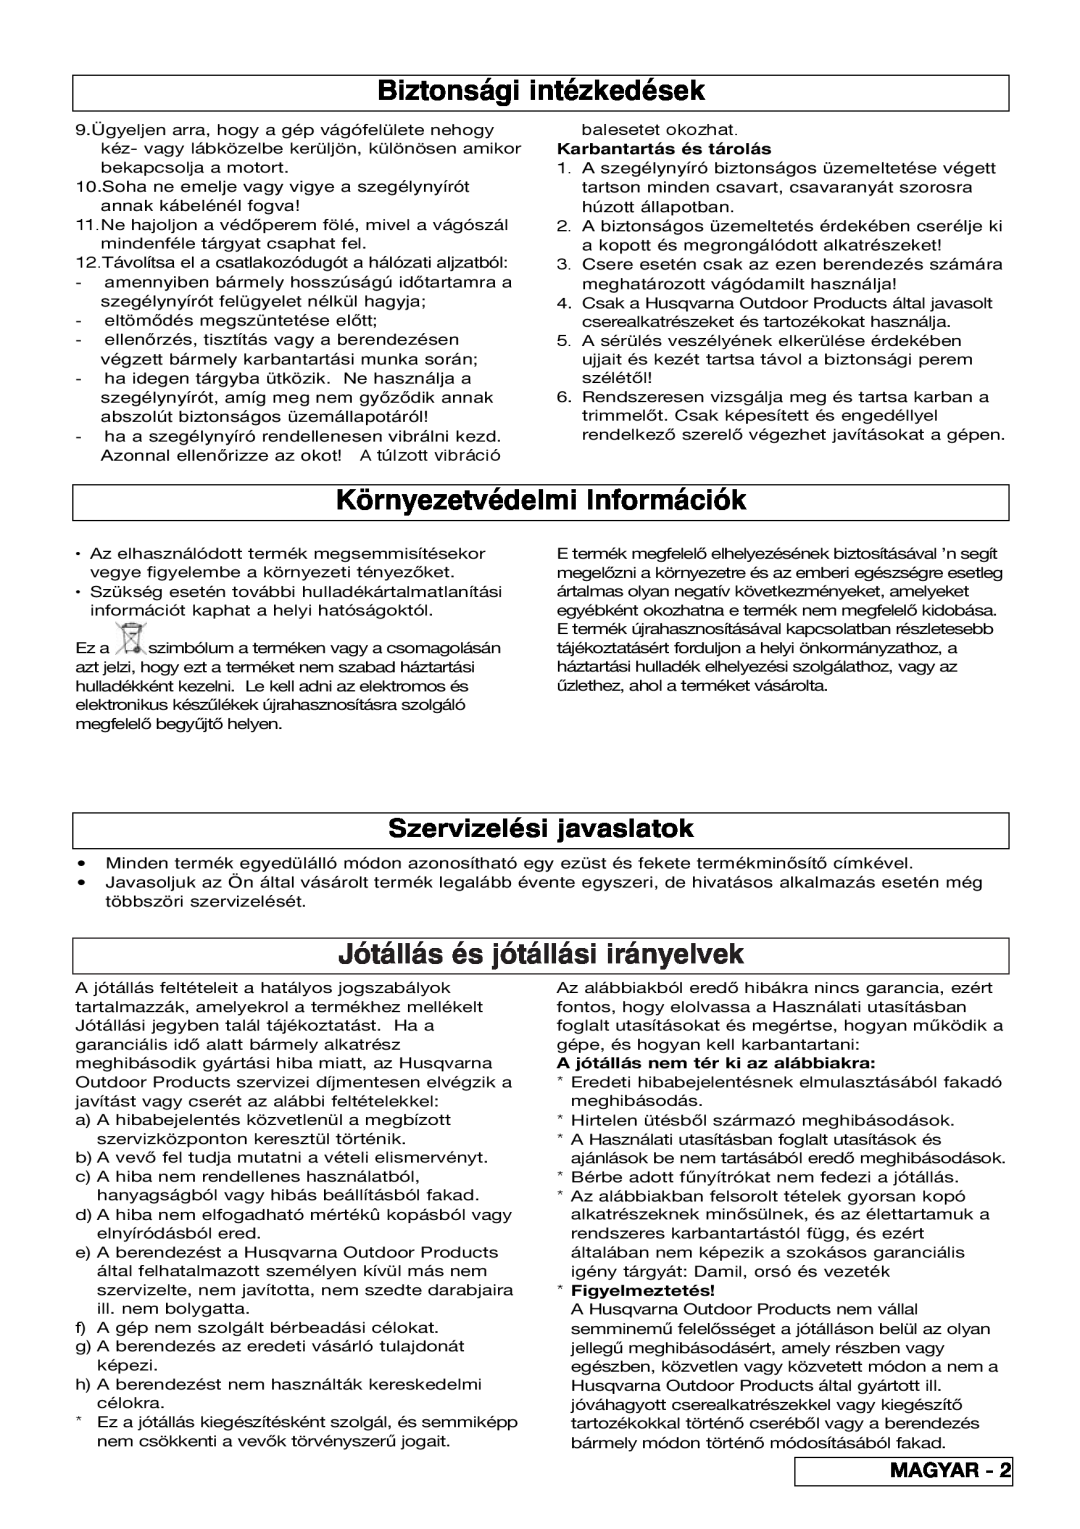 Flymo 800/1000 manual Biztonsági intézkedések, Környezetvédelmi Információk, Jótállás és jótállási irányelvek, Magyar 